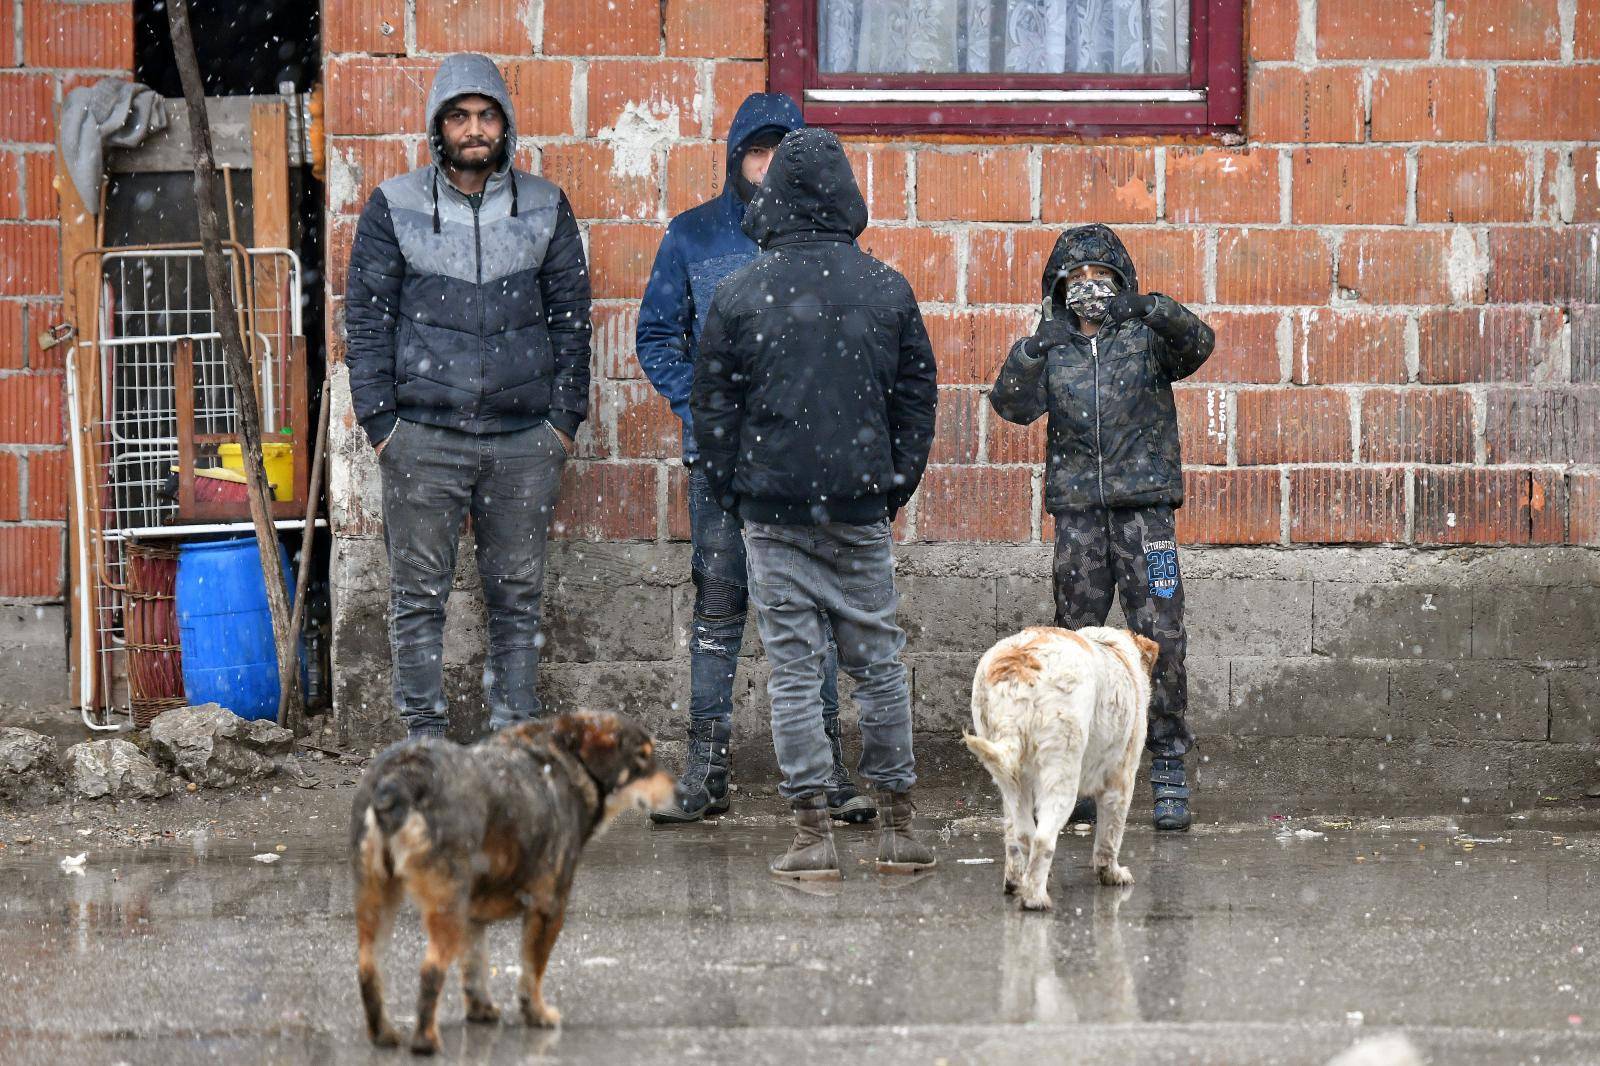 Poruka iz najvećeg romskog naselja u Hrvatskoj: "Bojimo se, mi ćemo se sigurno svi cijepiti"